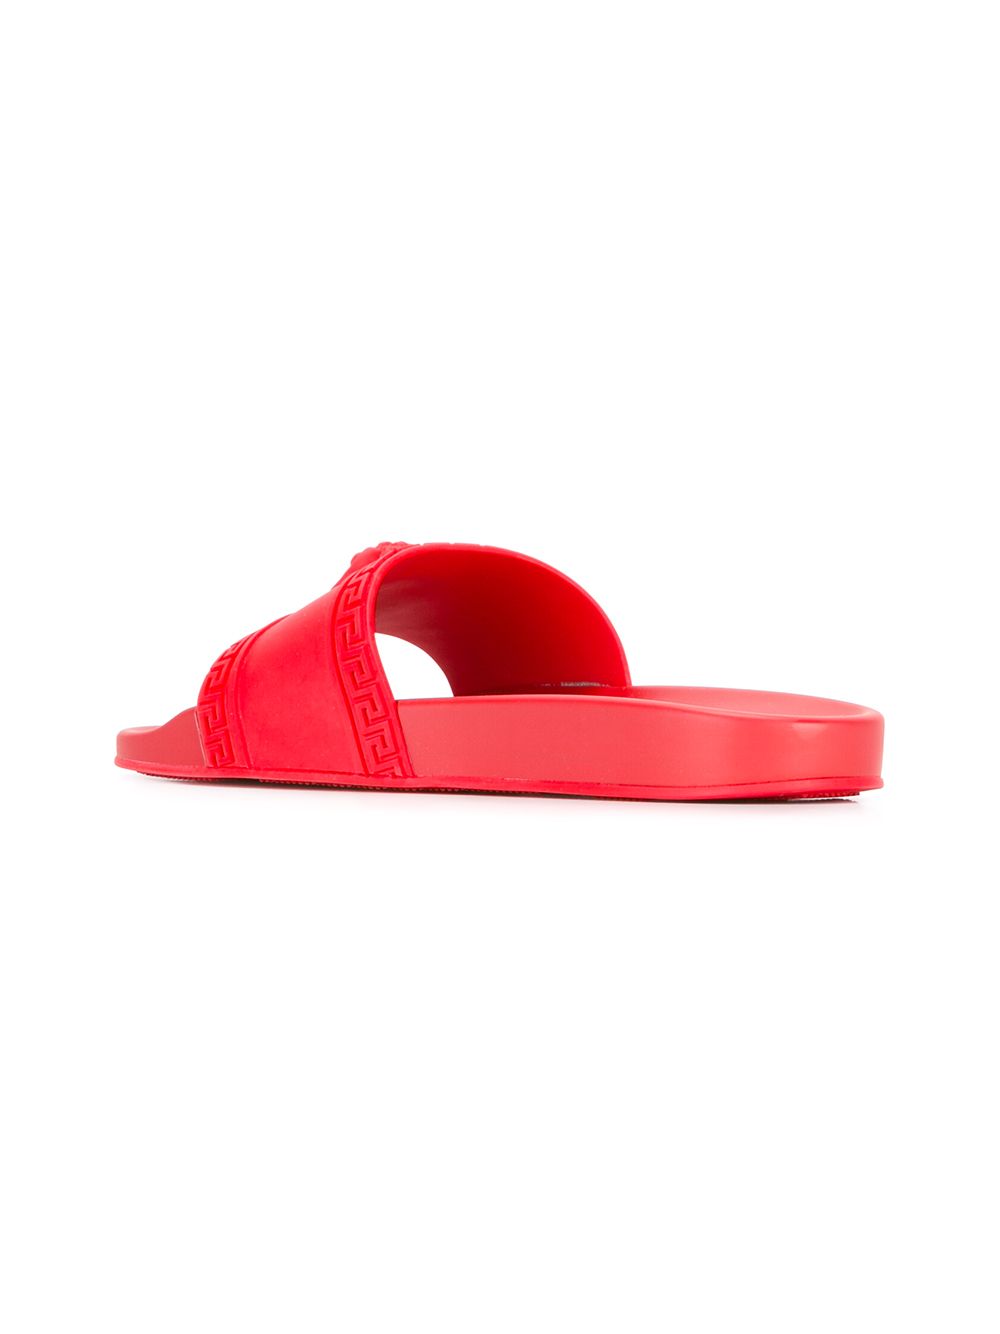 versace flip flops red